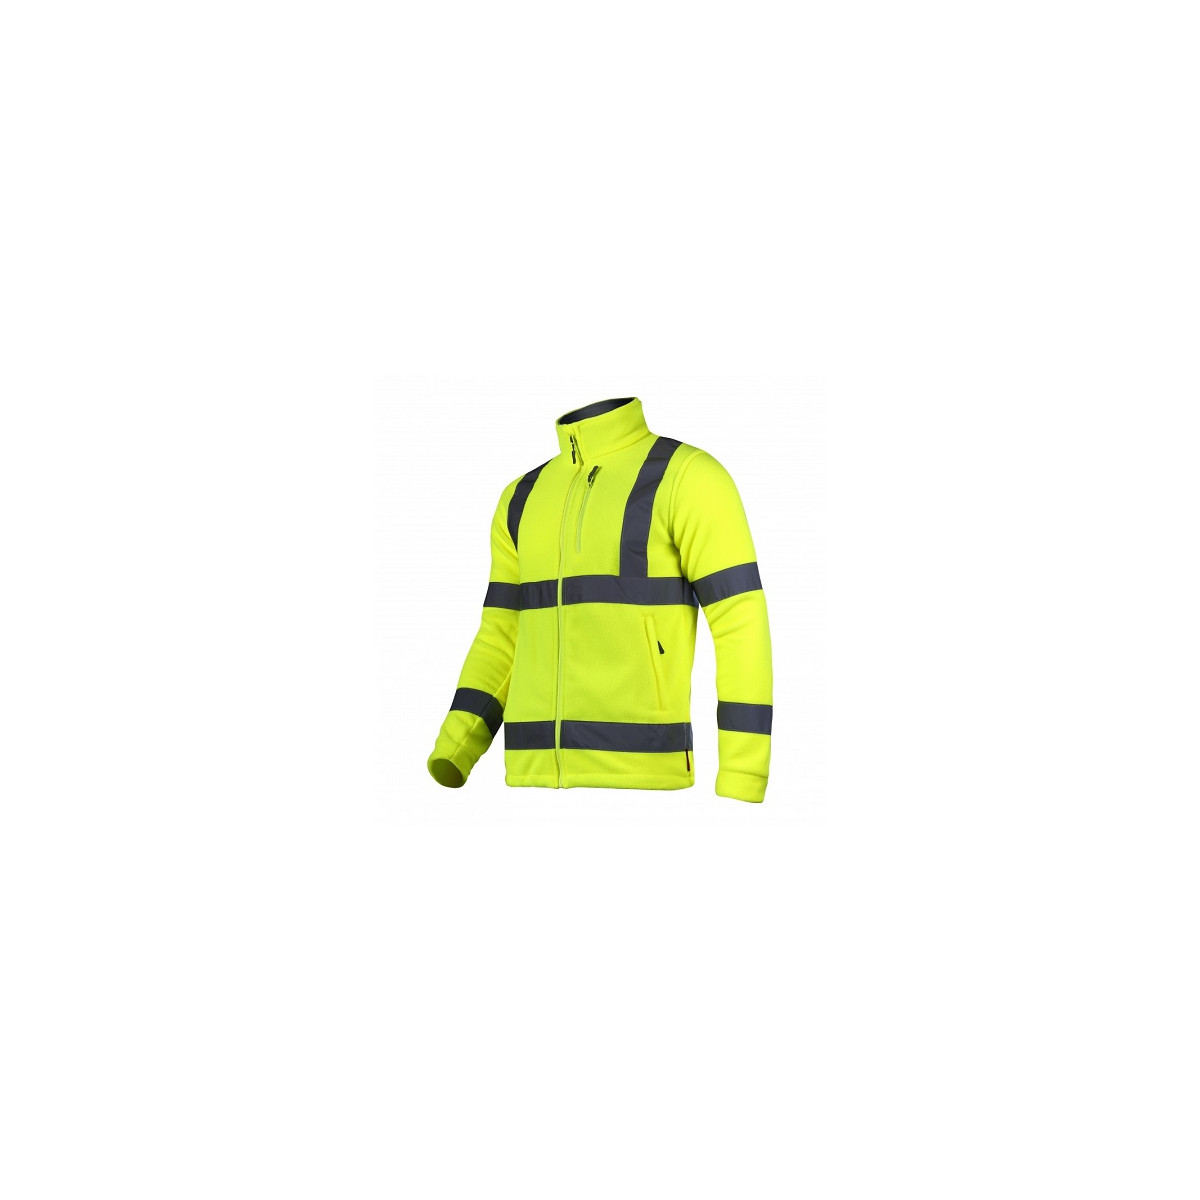 odblaskowa-odziez-hi-vis - Bluza polarowa ostrzegawcza żółta fluo z pasami odblaskowymi  L40109 Lahti Pro